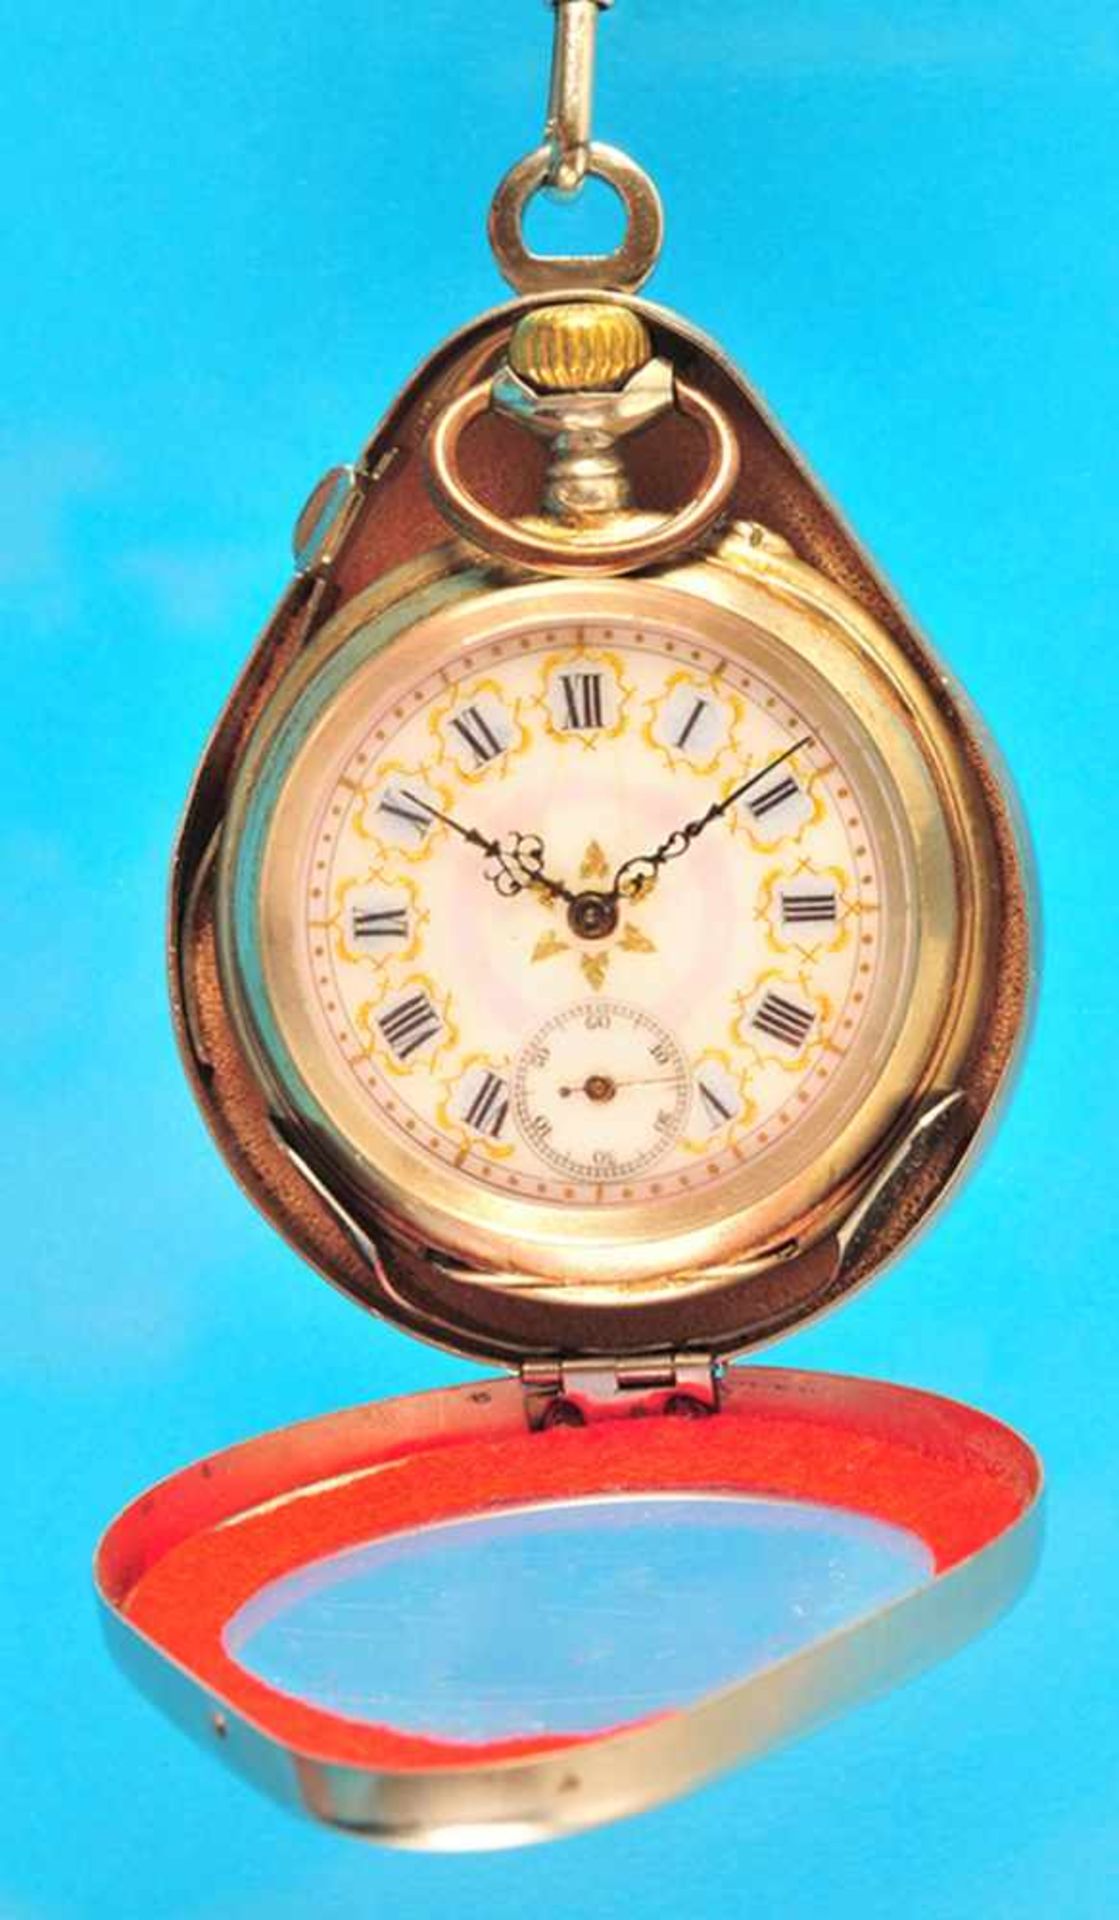 Silver pocket watch with pocket watch chainSilbertaschenuhr mit Taschenuhrkette, in ovaler